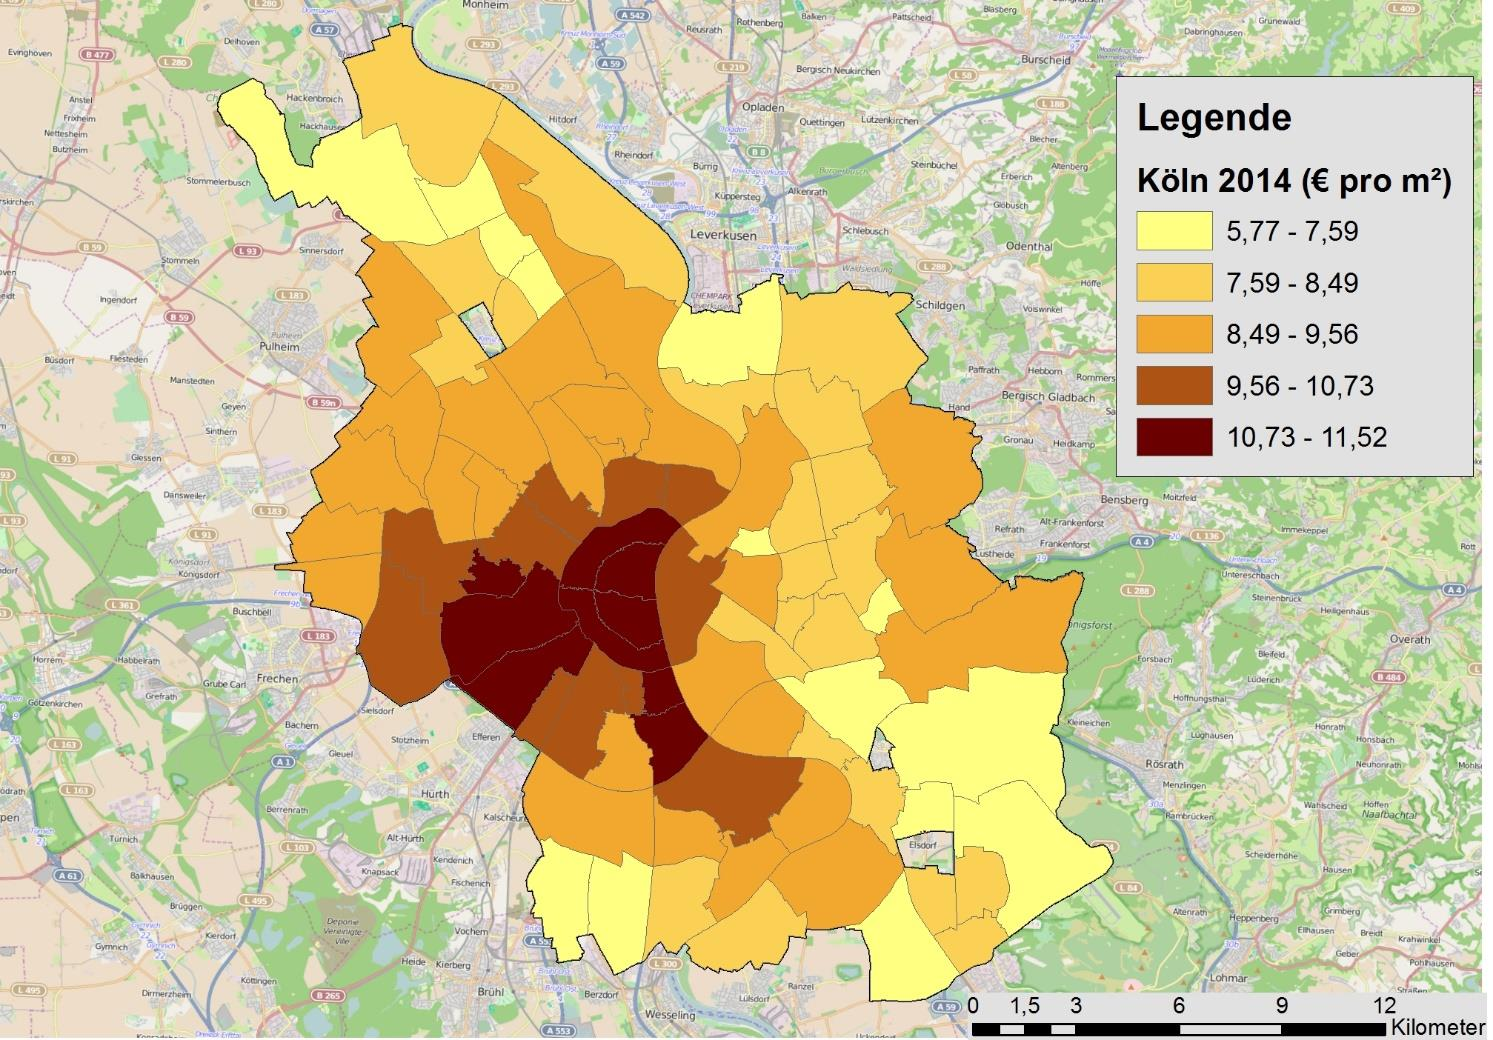 Kölner Stadtteile durchschnittliche Miete pro m² Quellen: ImmobilienScout24, Institut der deutschen Wirtschaft